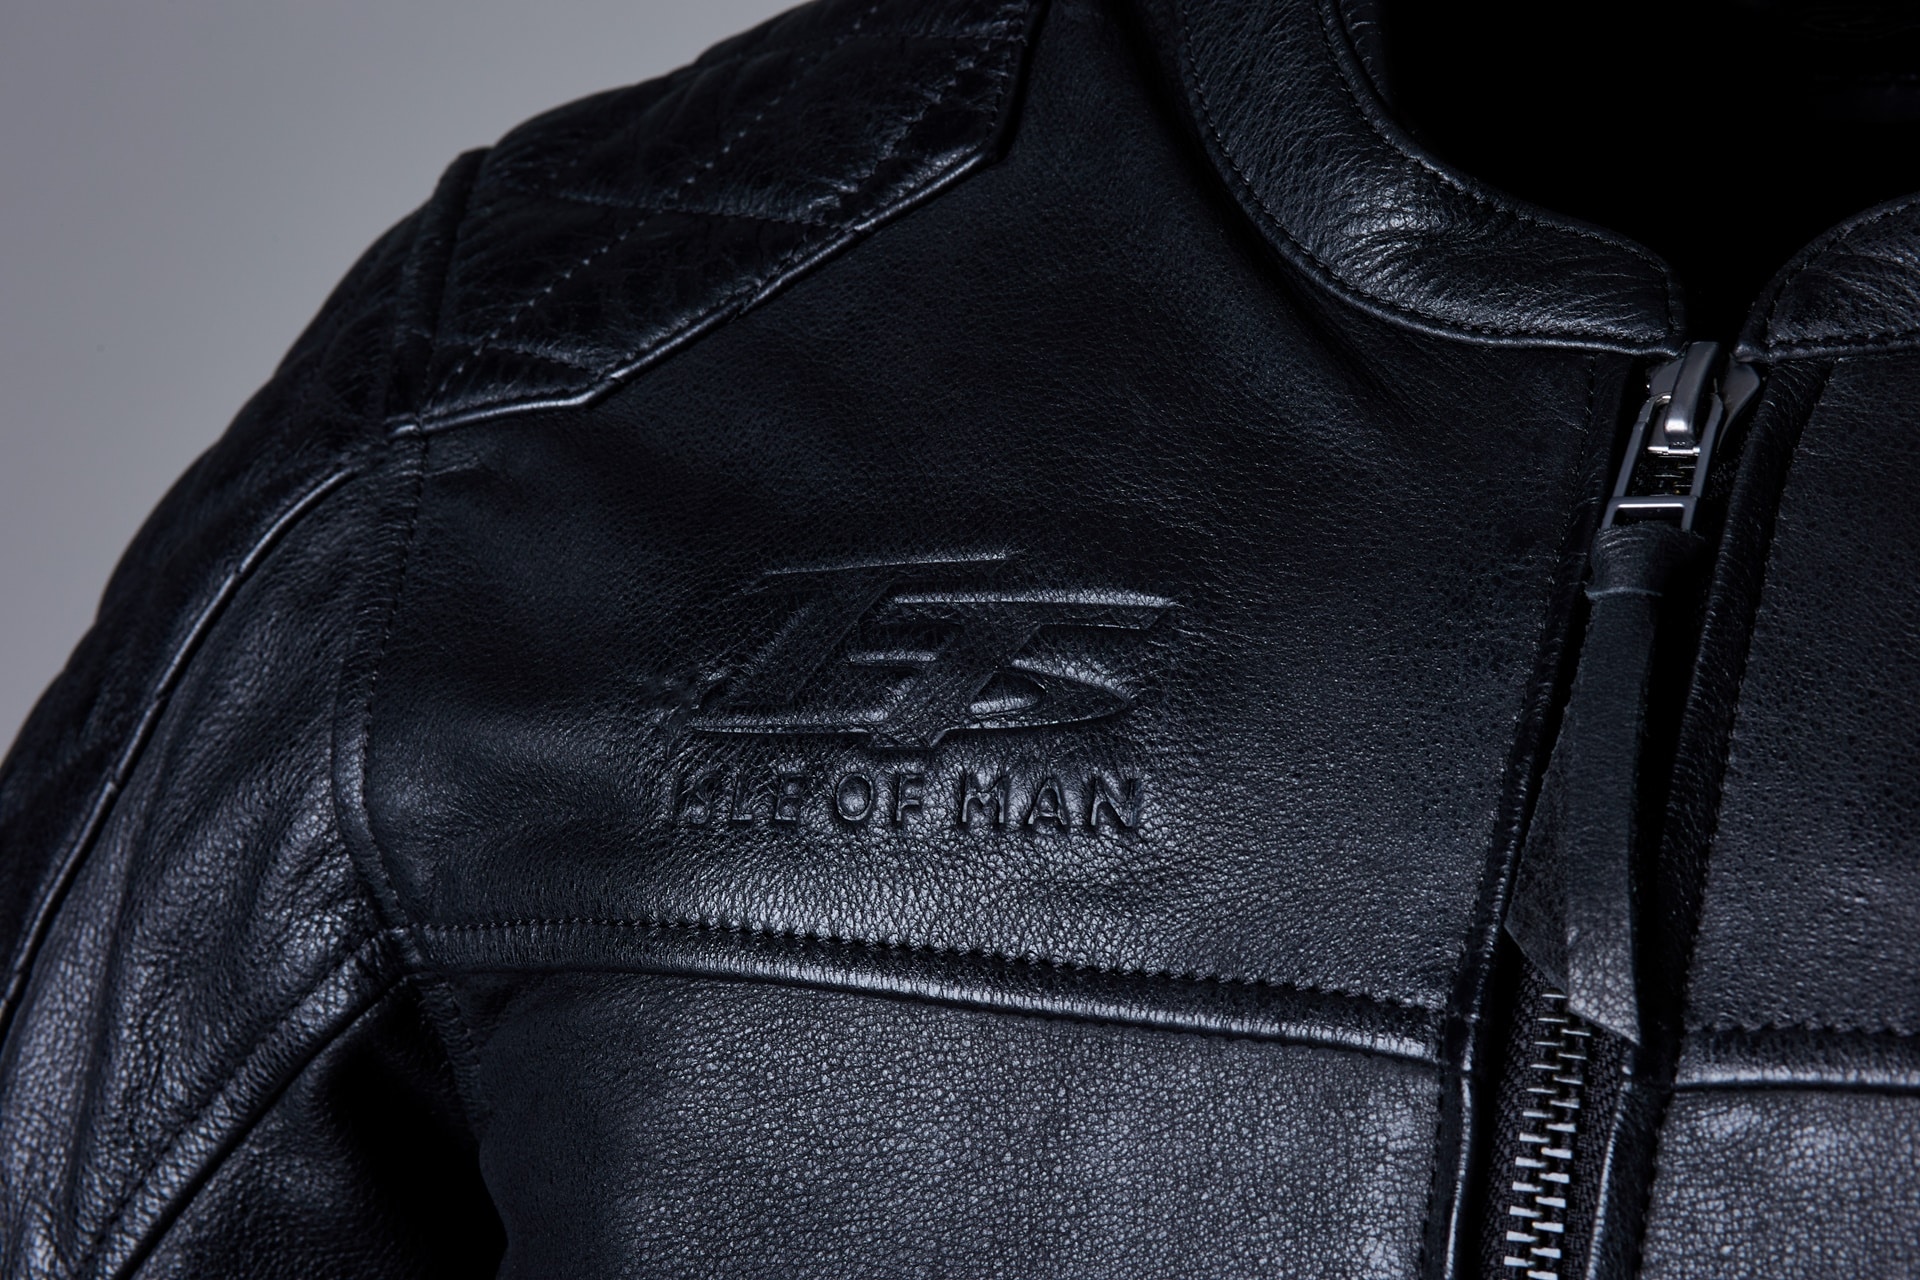 RST presenta tres nuevas versiones de sus chaquetas más célebres